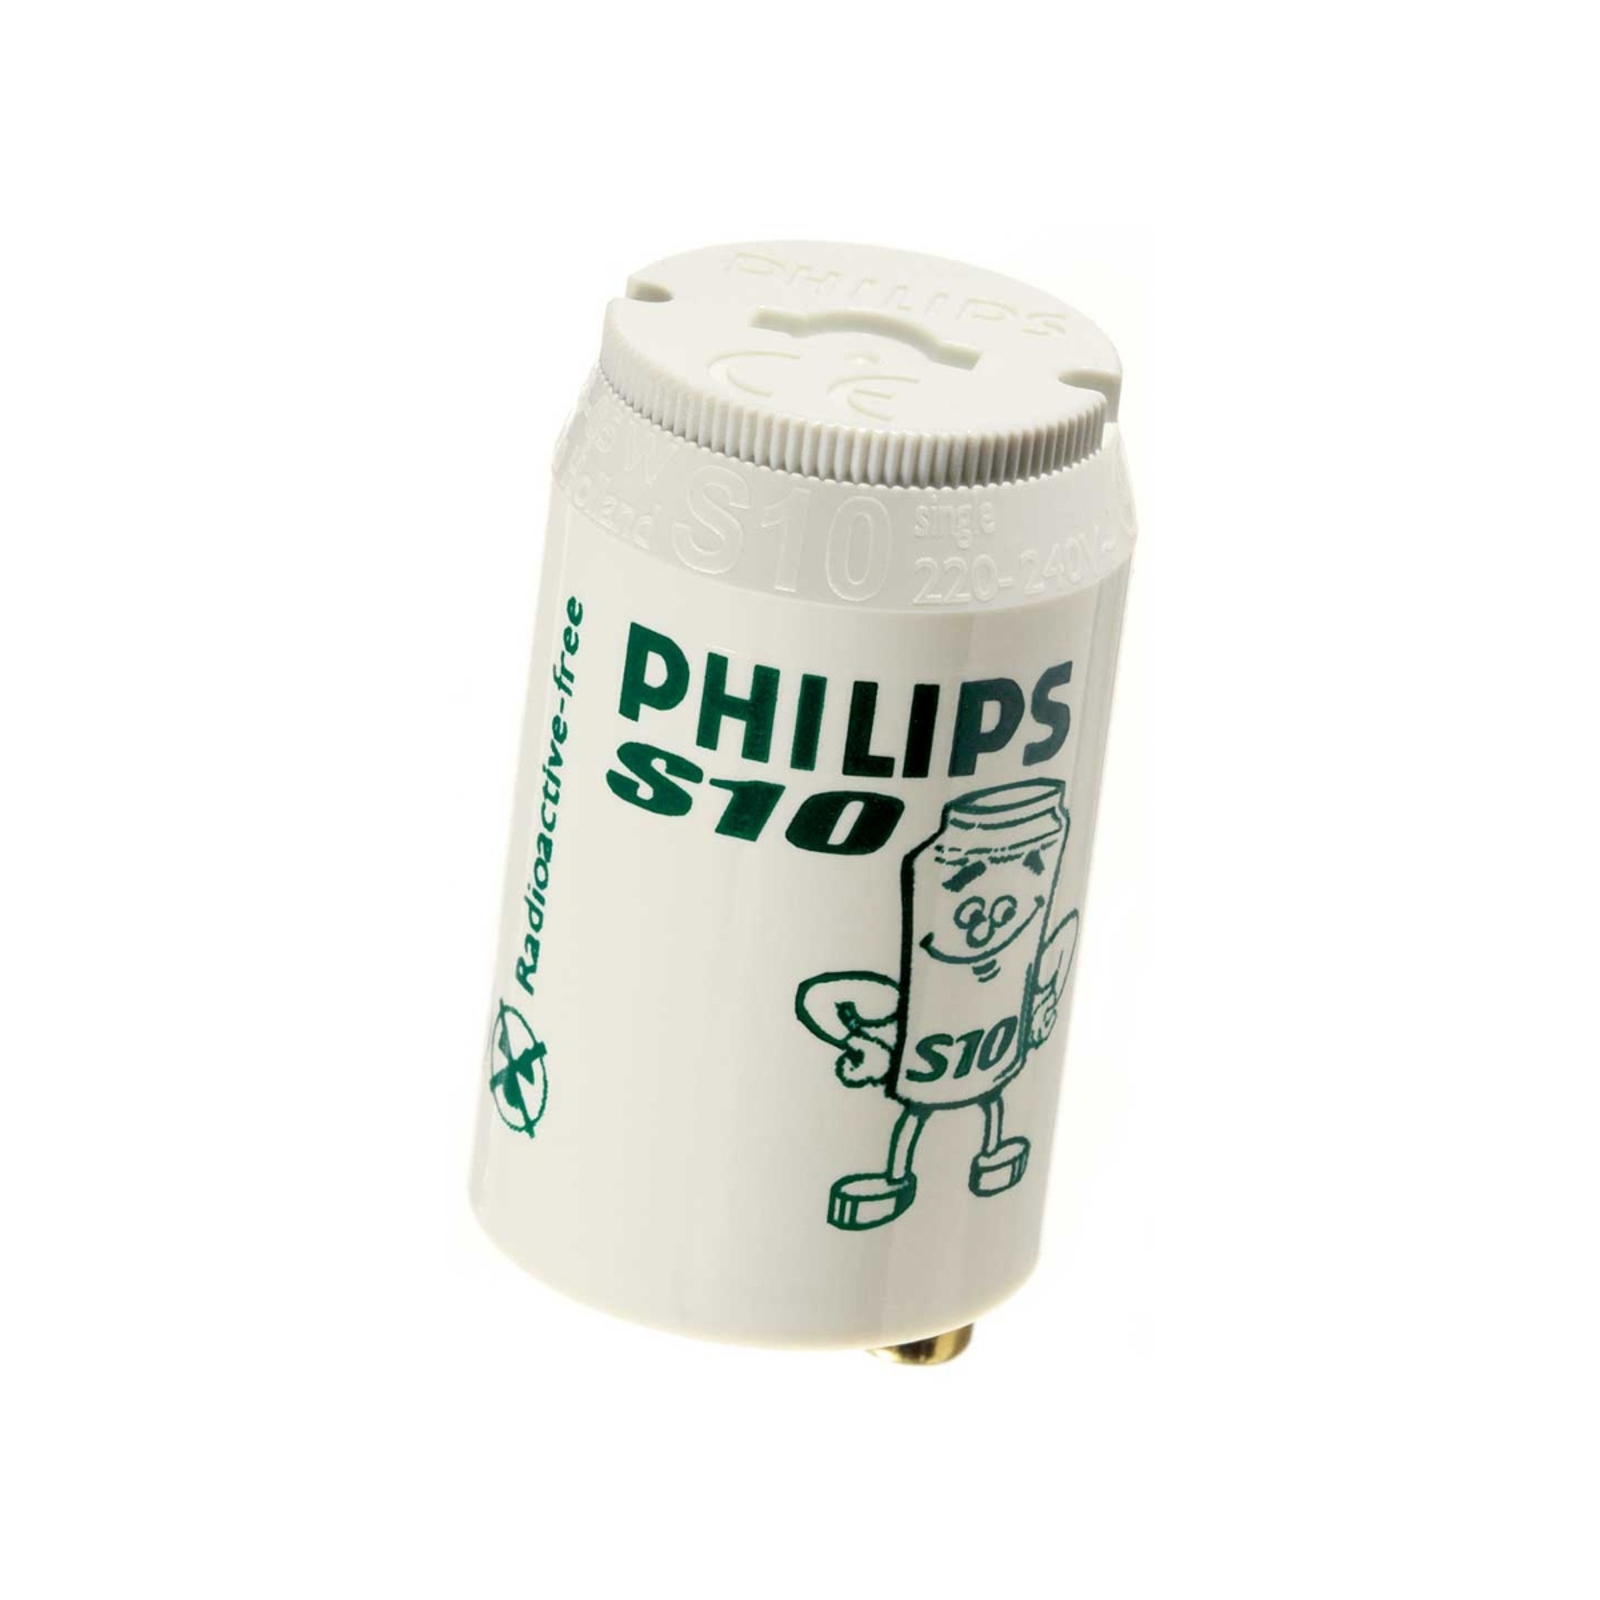 Starter für Leuchtstofflampen S10 4-65W - Philips